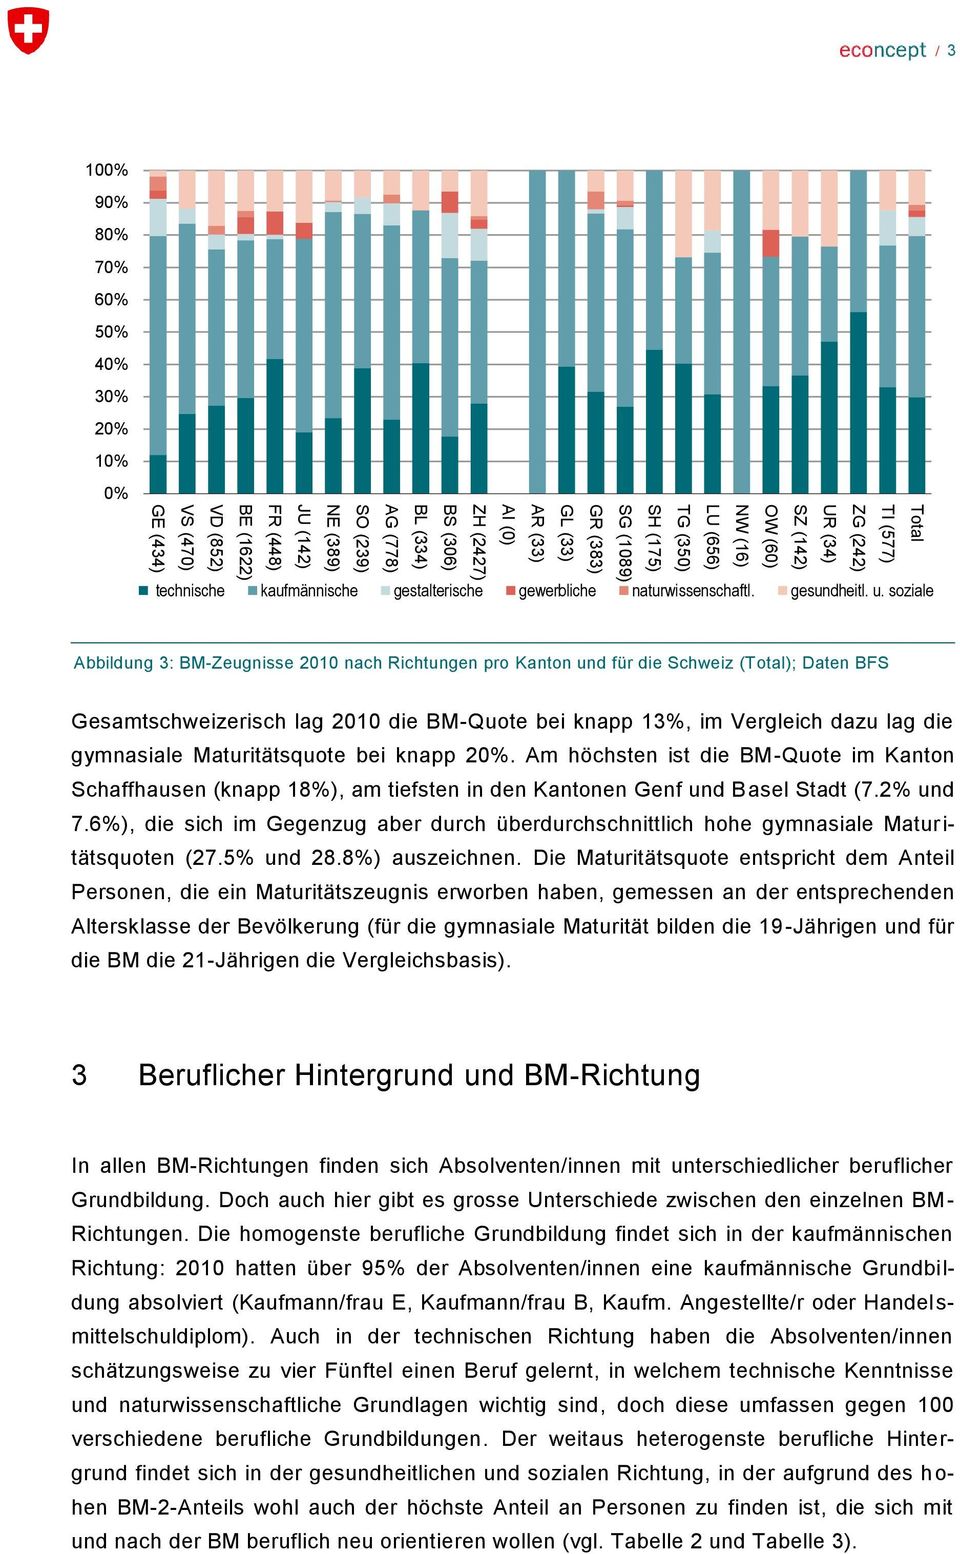 Gesamtschweizerisch lag 2 die BM-Quote bei knapp, im Vergleich dazu lag die gymnasiale Maturitätsquote bei knapp 2.